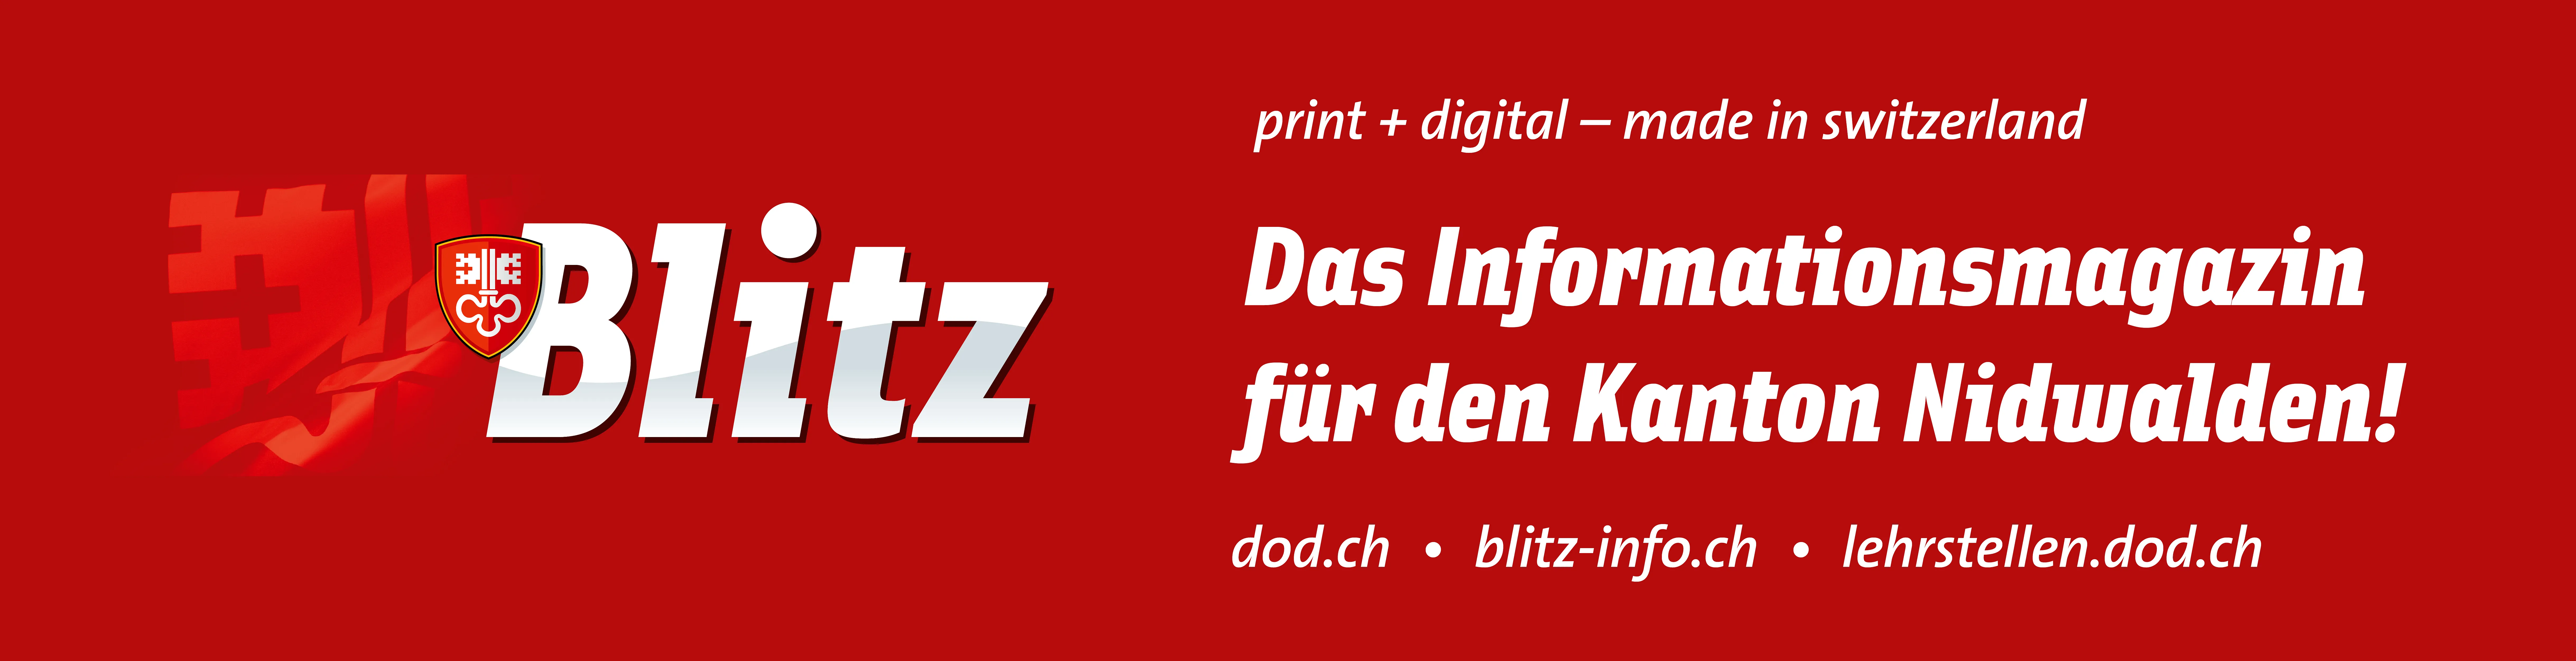 Nidwaldner-Blitz Verlagsgesellschaft AG